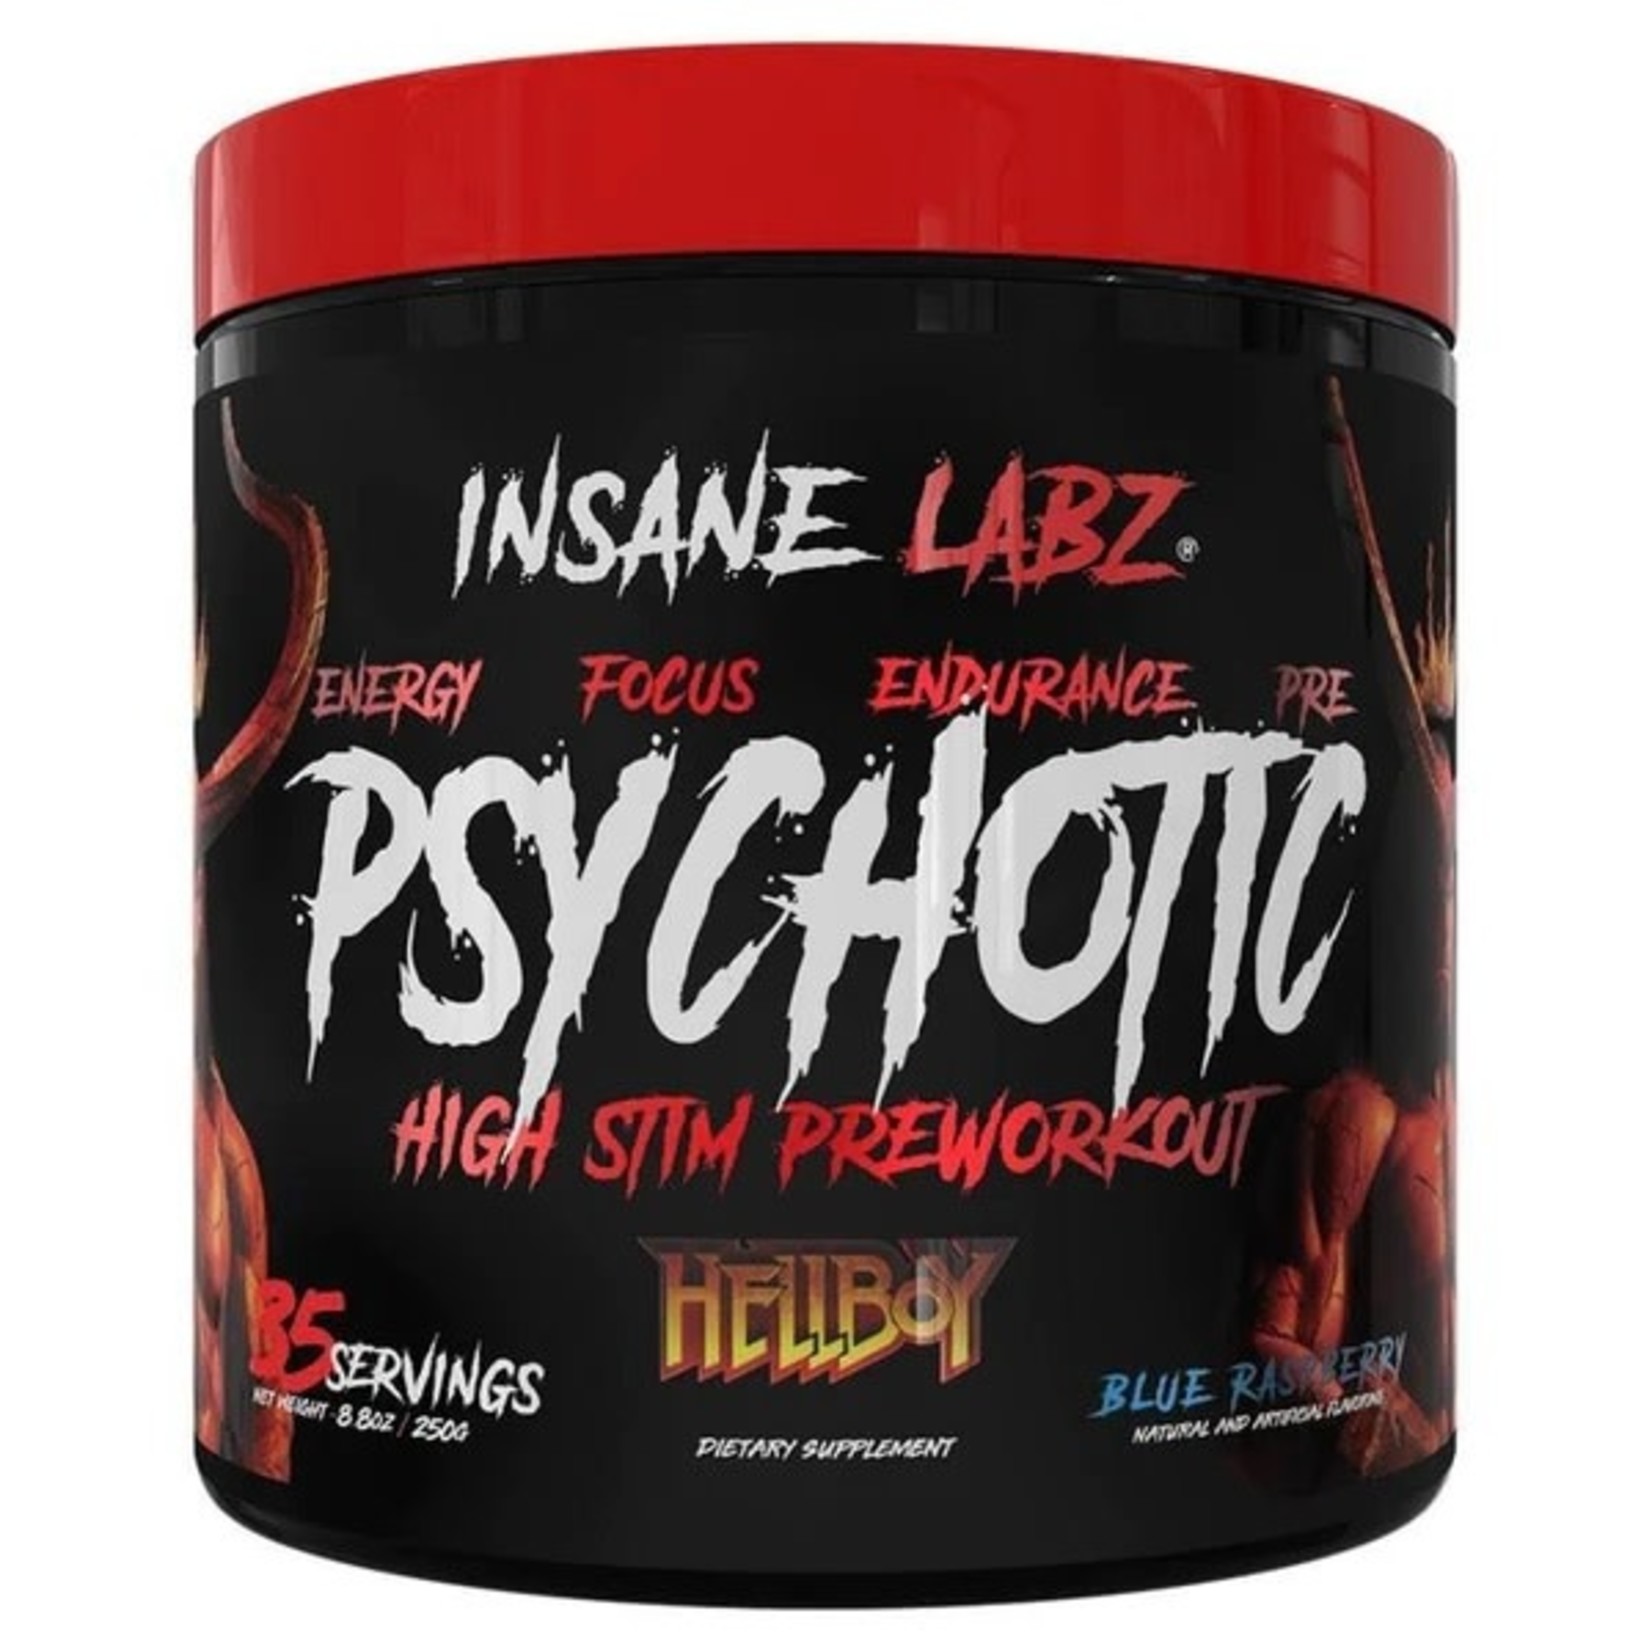 Insane Labz Insane Labz Psychotic Hellboy